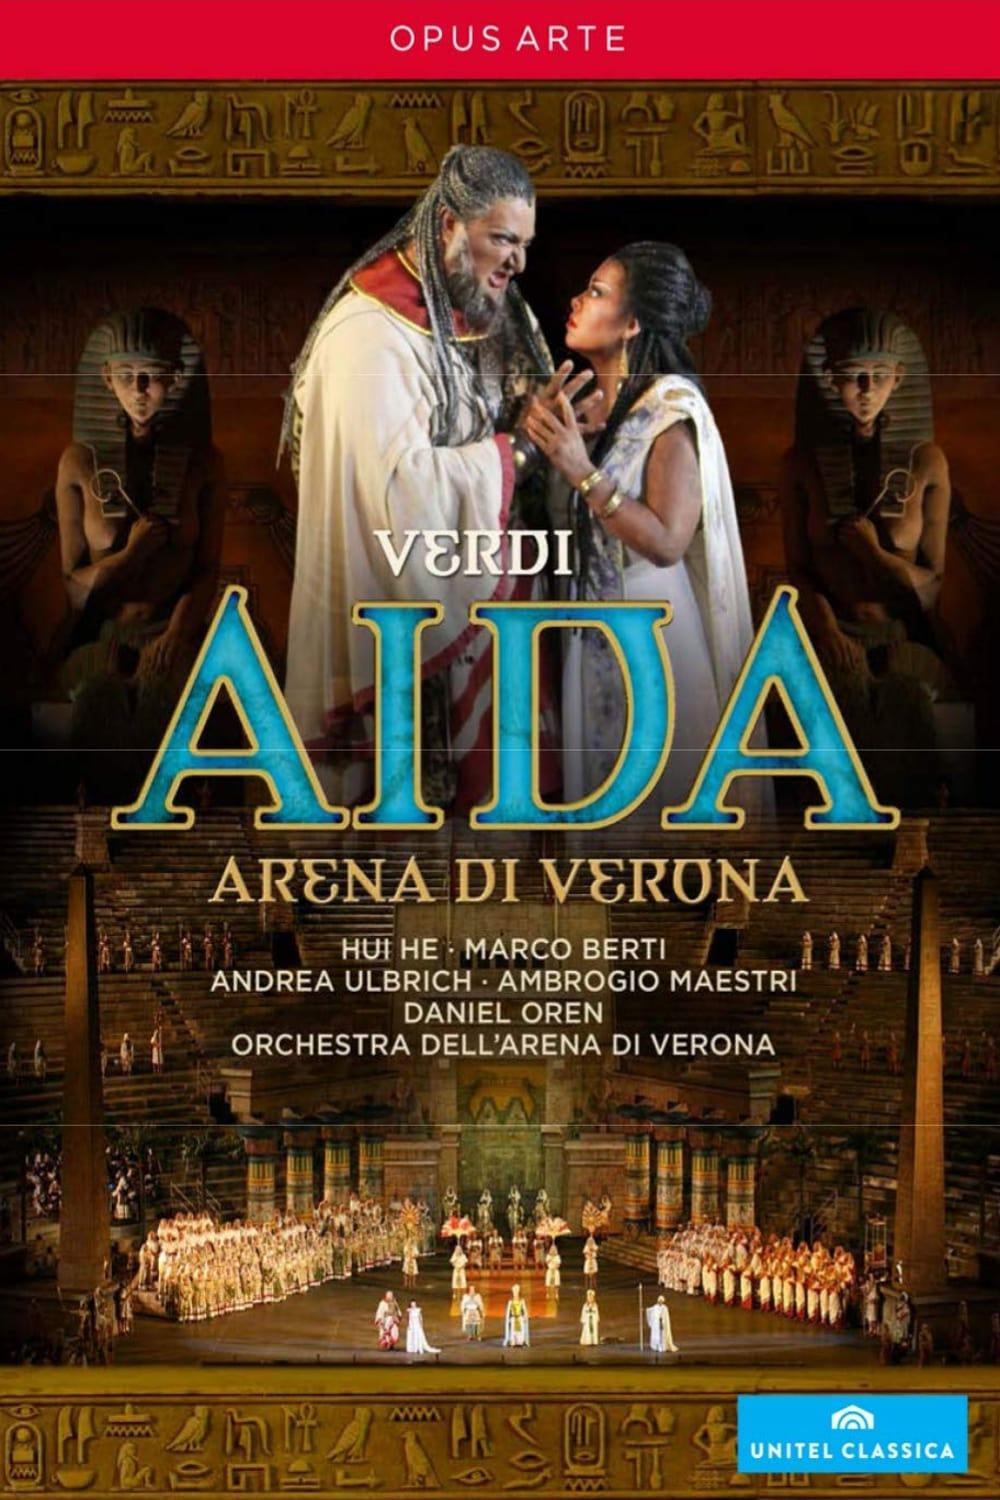 Aida - Arena di Verona poster